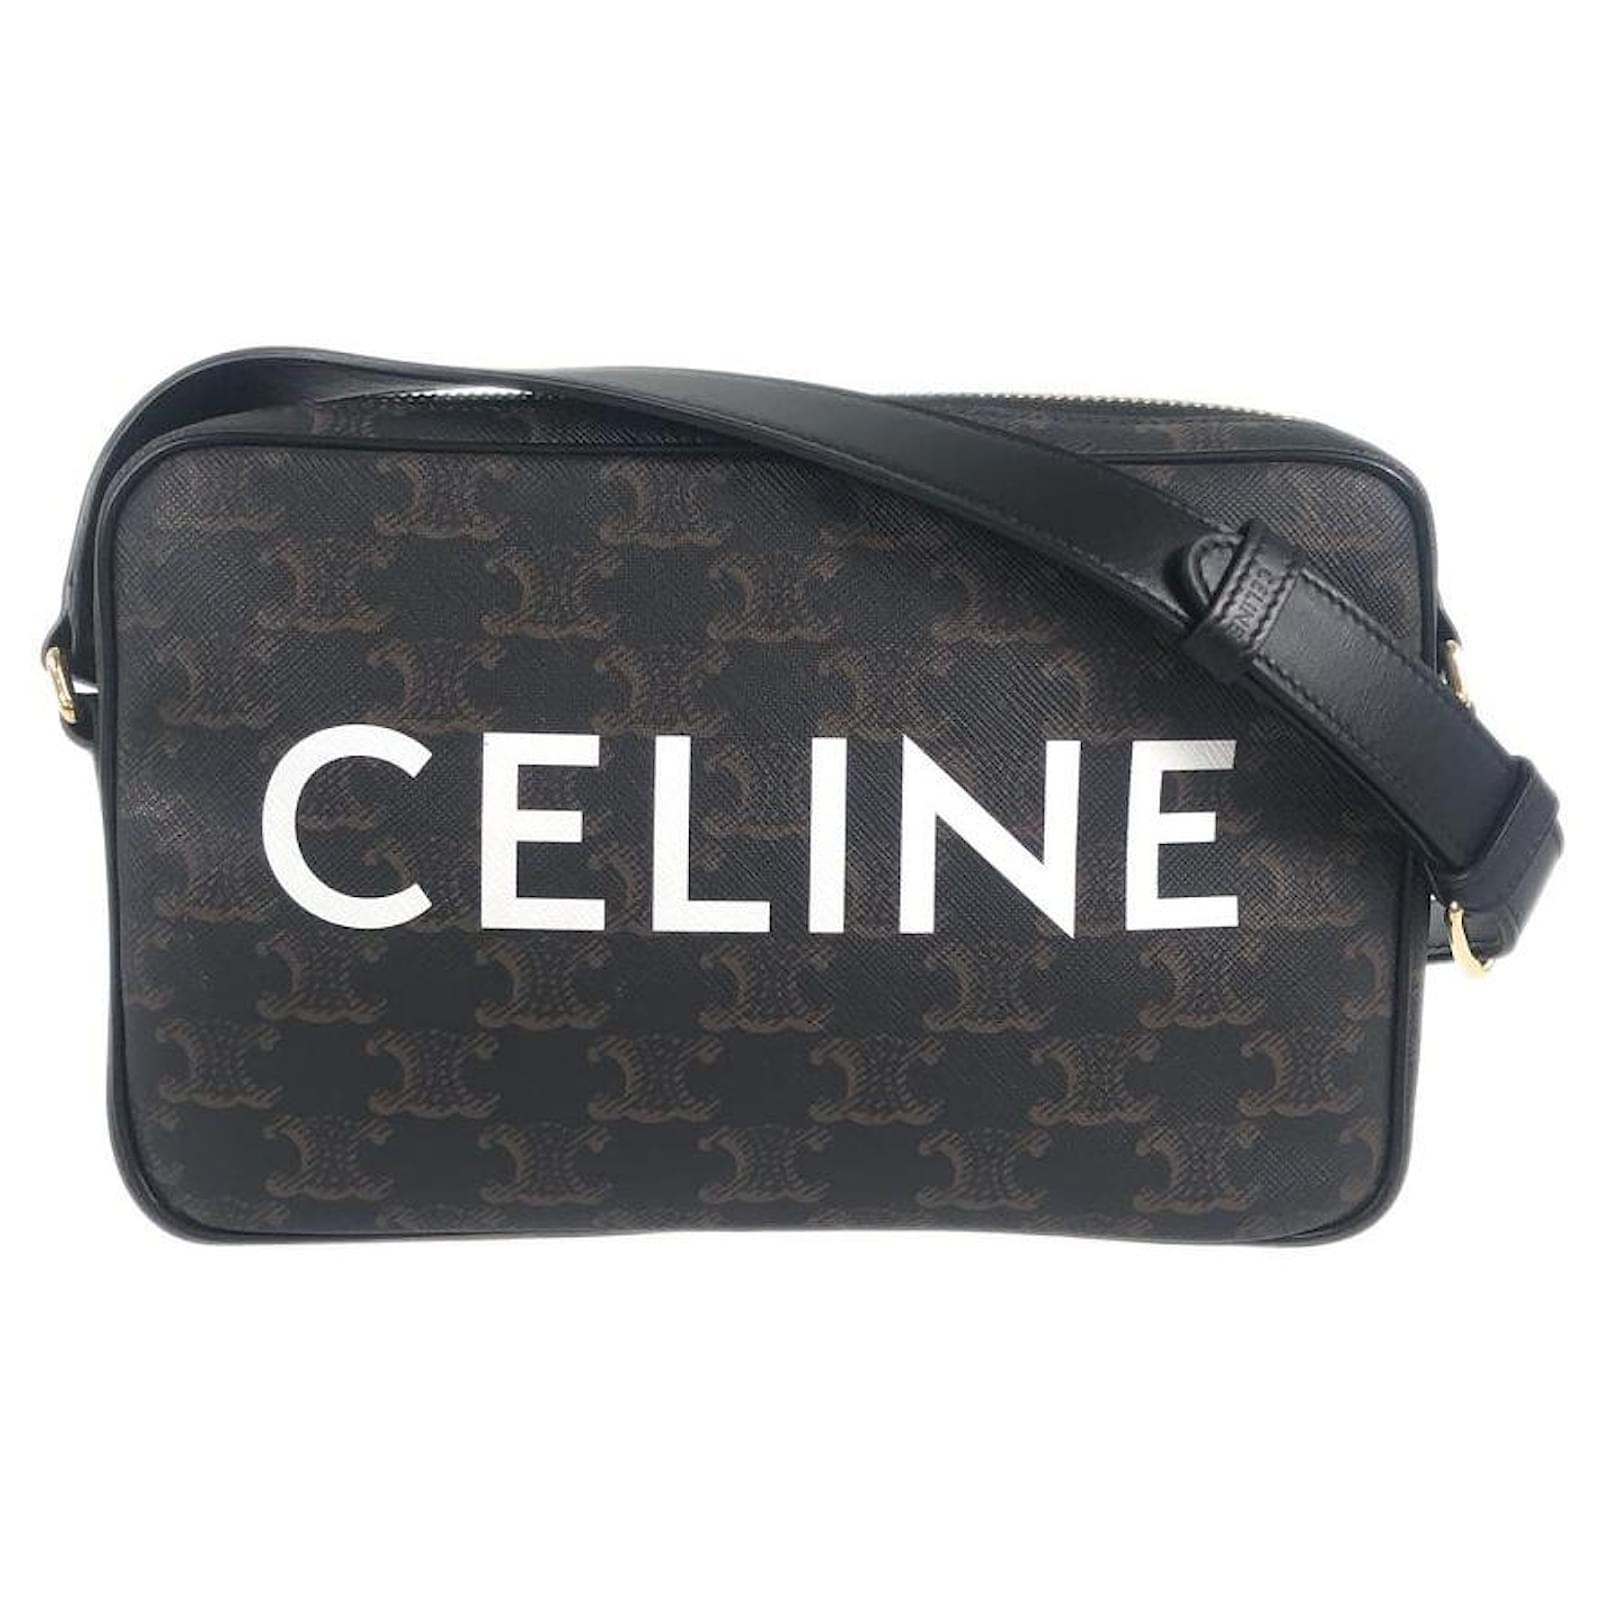 celine messenger bag black